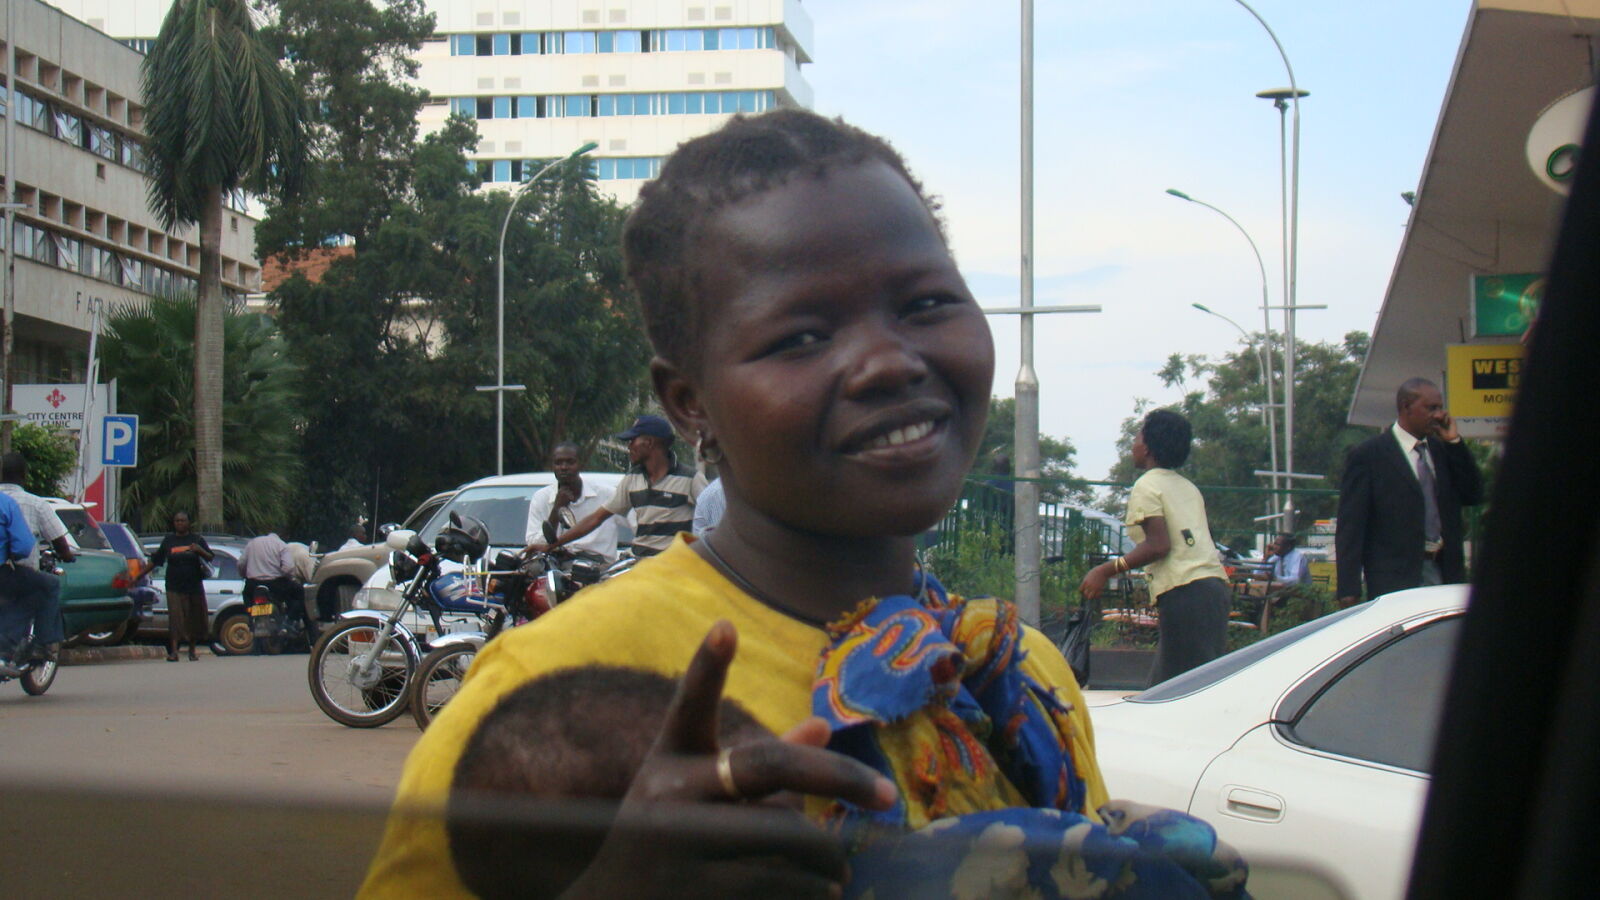 Sony Cyber-shot DSC-H50 sample photo. African, beggar, kampala, karamoja photography